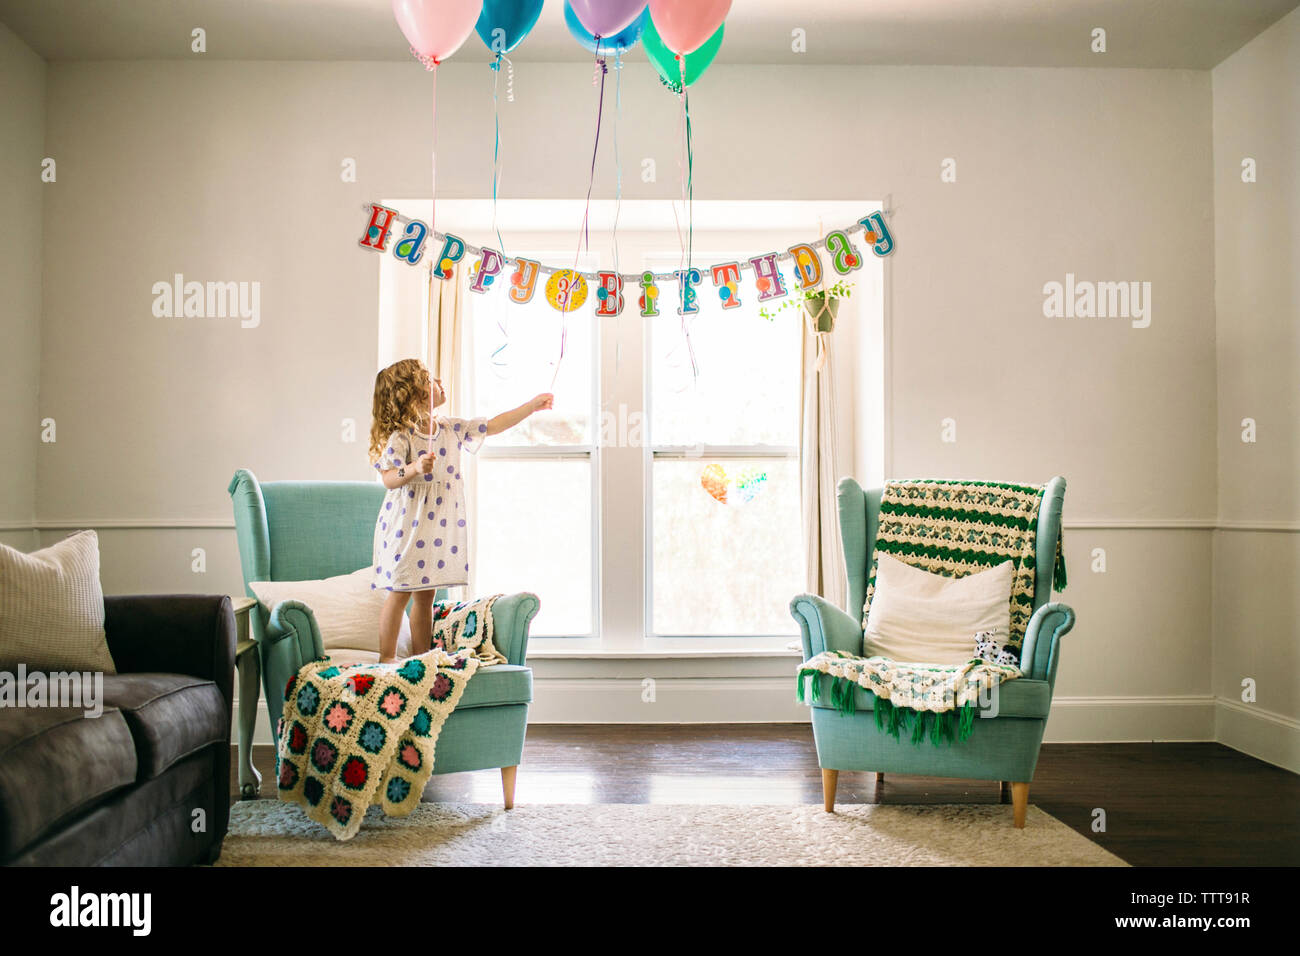 Girl decorating ballons dans le salon pour anniversaire Banque D'Images